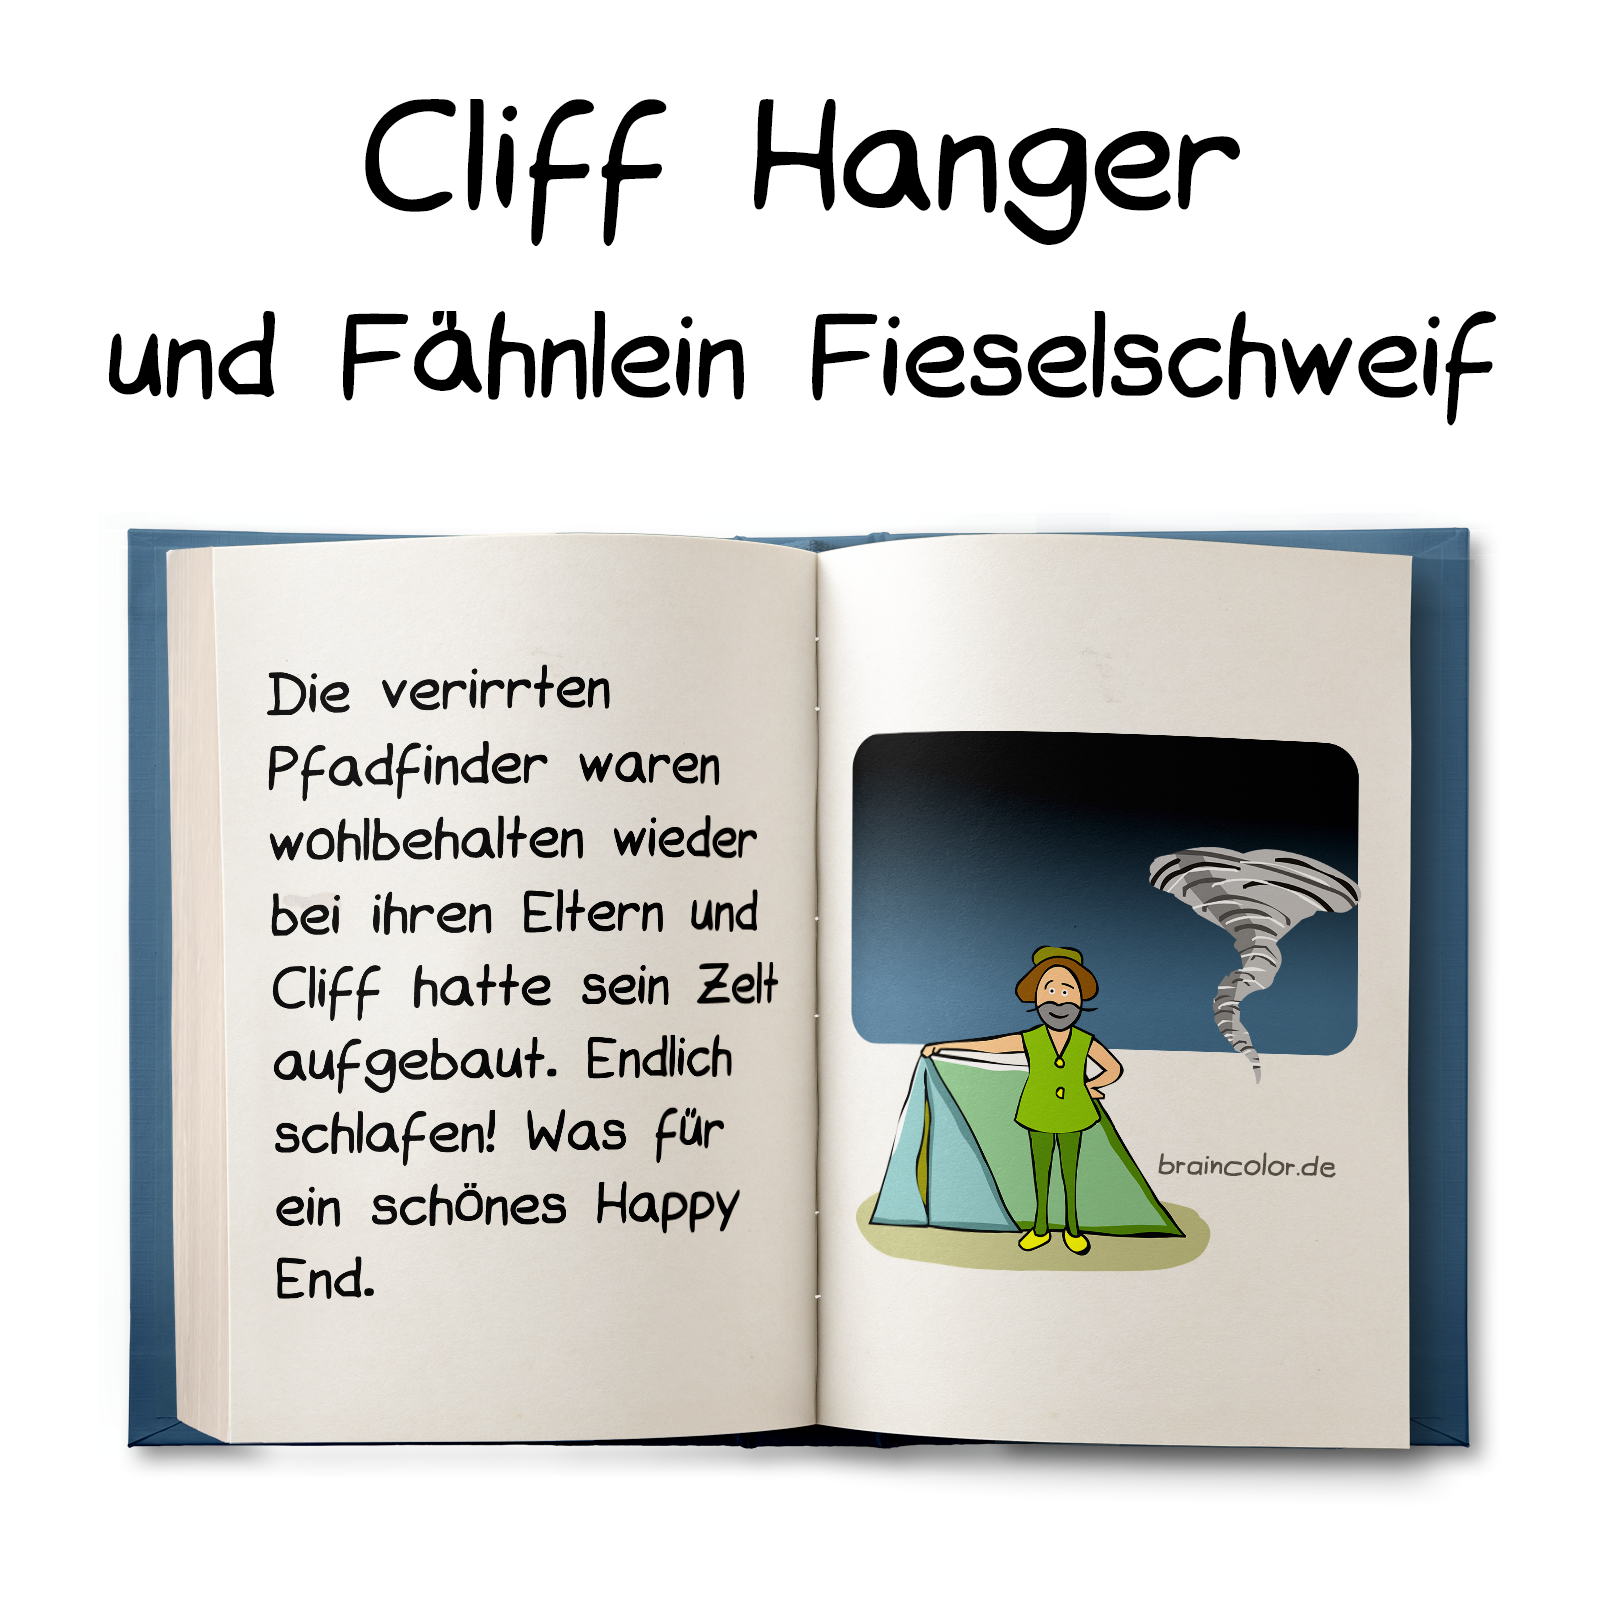 Cliff Hanger und Fähnlein Fieselschweif